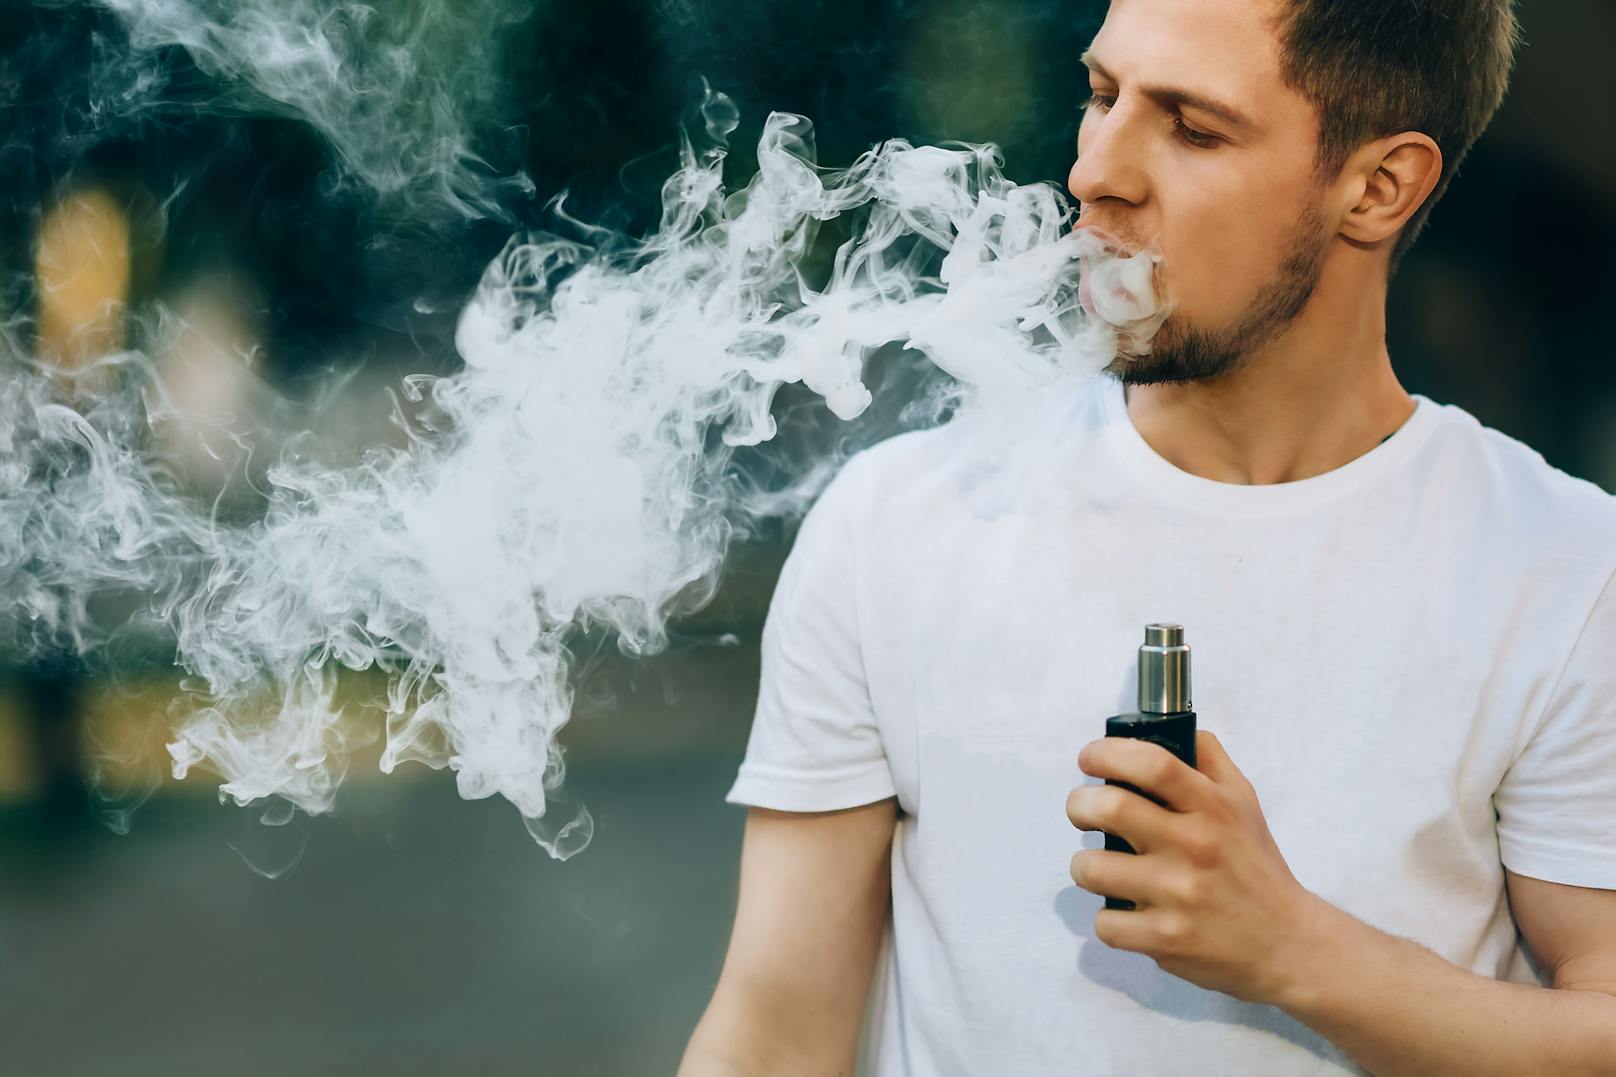 Laut den Wissenschaftlern zeigt die im "Journal of the American College of Cardiology" erschienene Studie deutlich, dass E-Zigis keine sichere Alternative zum Tabakrauchen sind. Konkret habe sich gezeigt, dass die Liquids Veränderungen bewirken,…